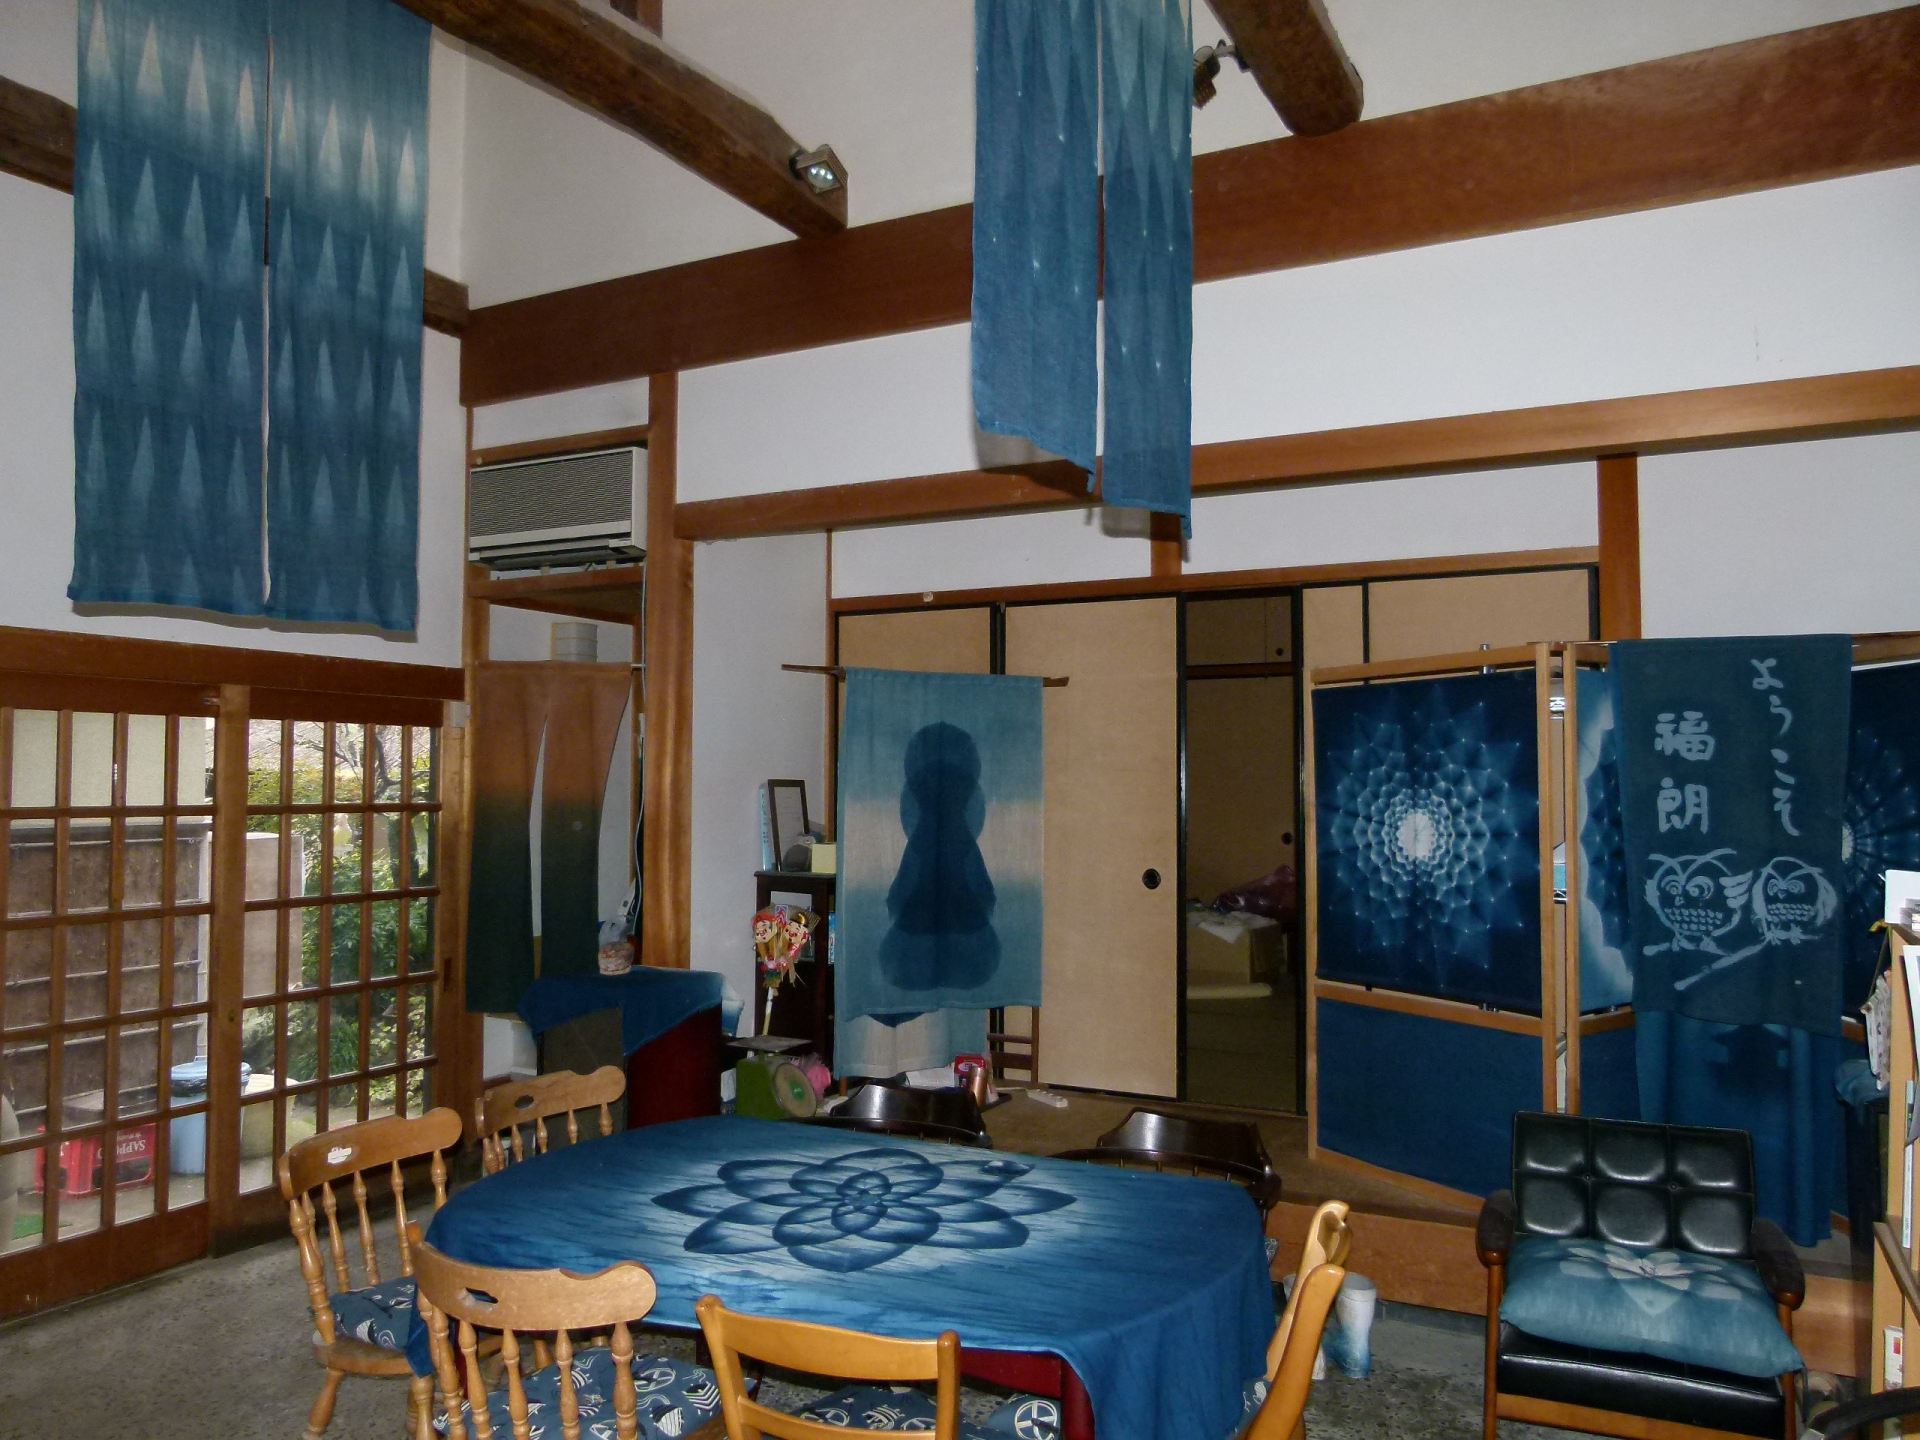 “ジャパンブルー”と呼ばれる、日本を象徴する美しい藍色が魅力。